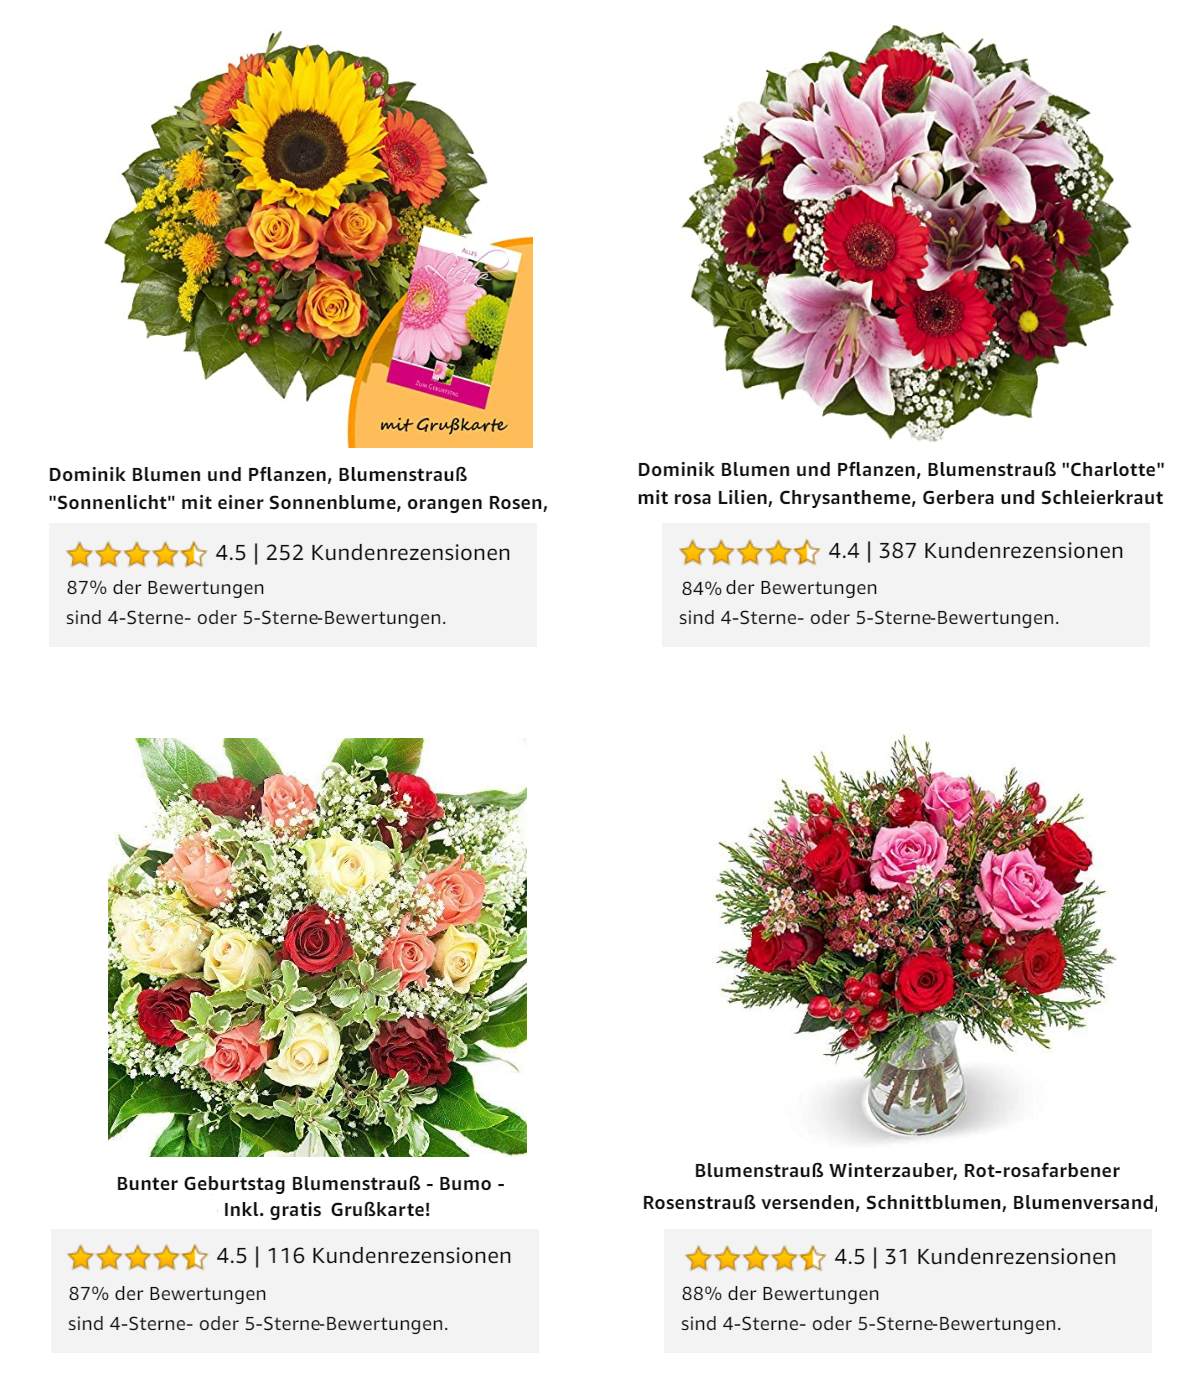 Die am besten bewerteten Blumenstrue vom Amazon Blumenversand